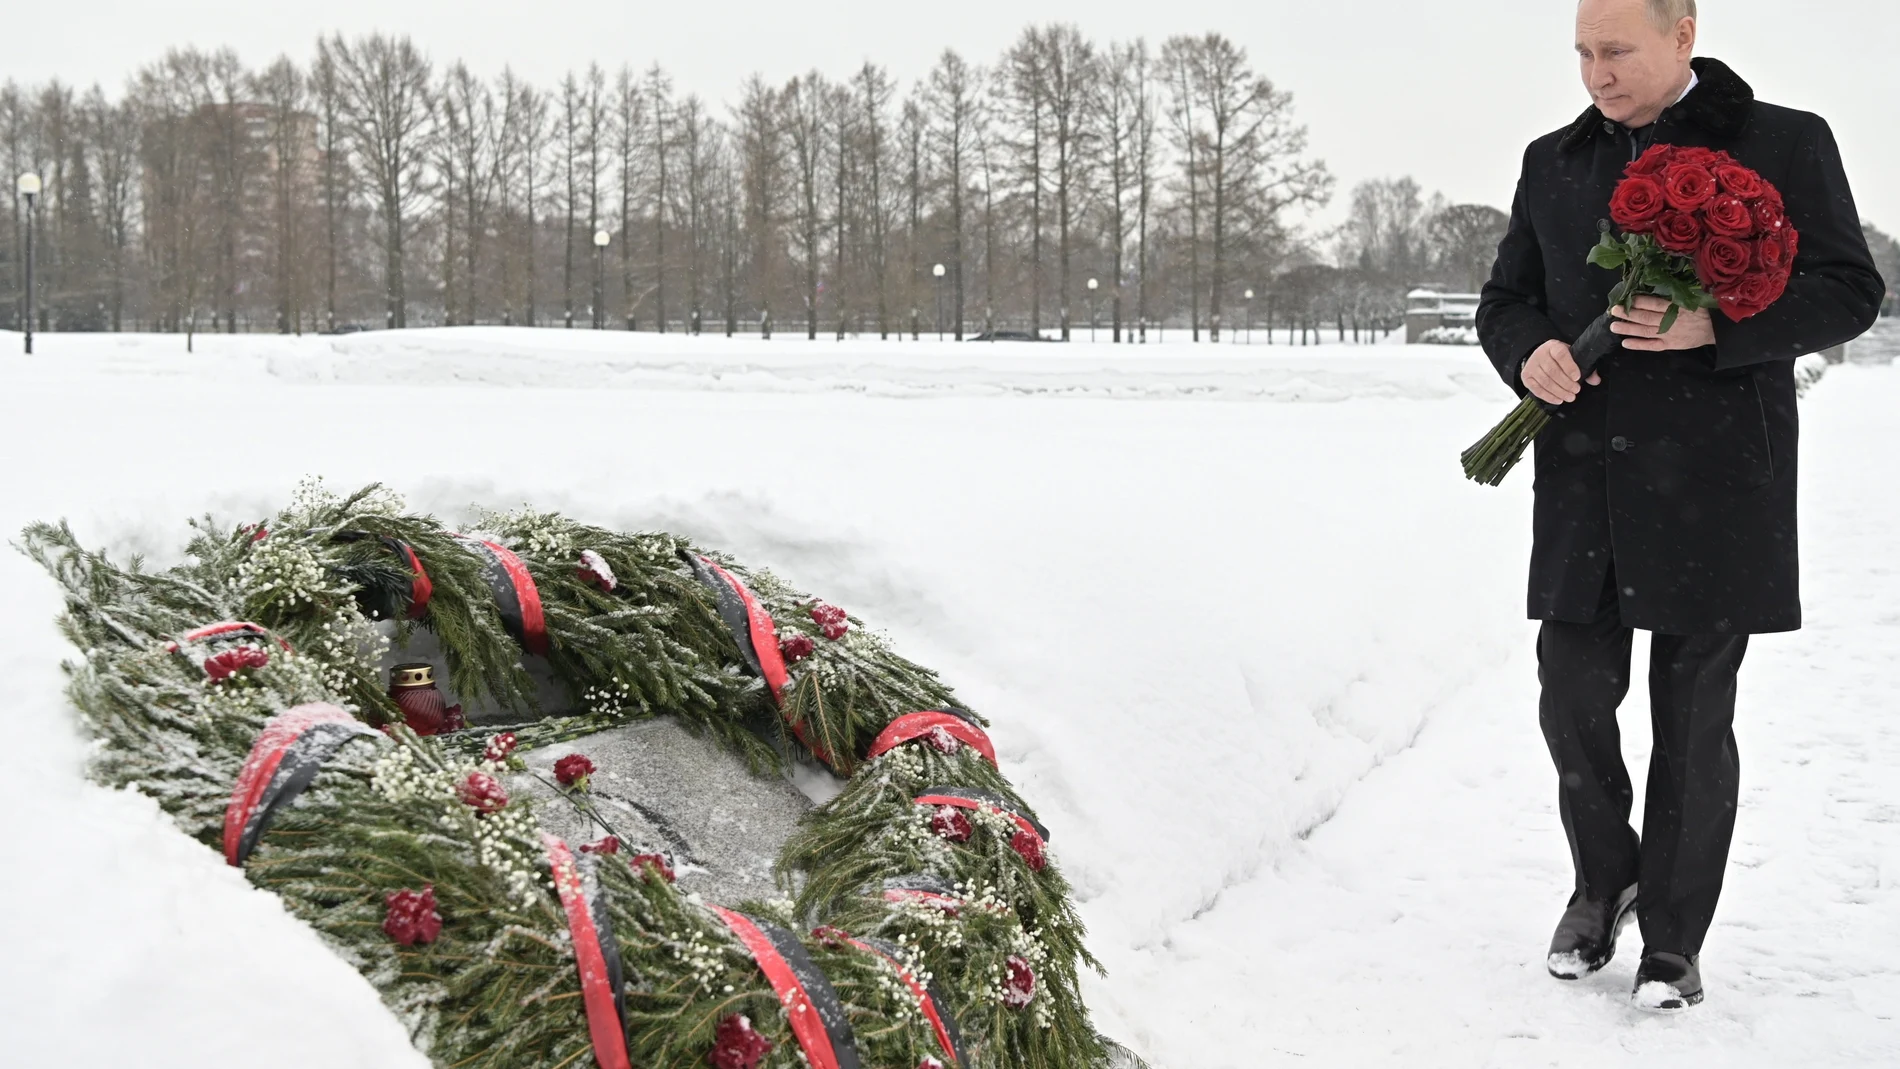 St. Petersburgo. Vladimir Putin deposita un ramo de flores en el Memorial del cementerio de Piskaryovskoye, durante el 78 aniversario de la retirada nazi de Stalingrado.